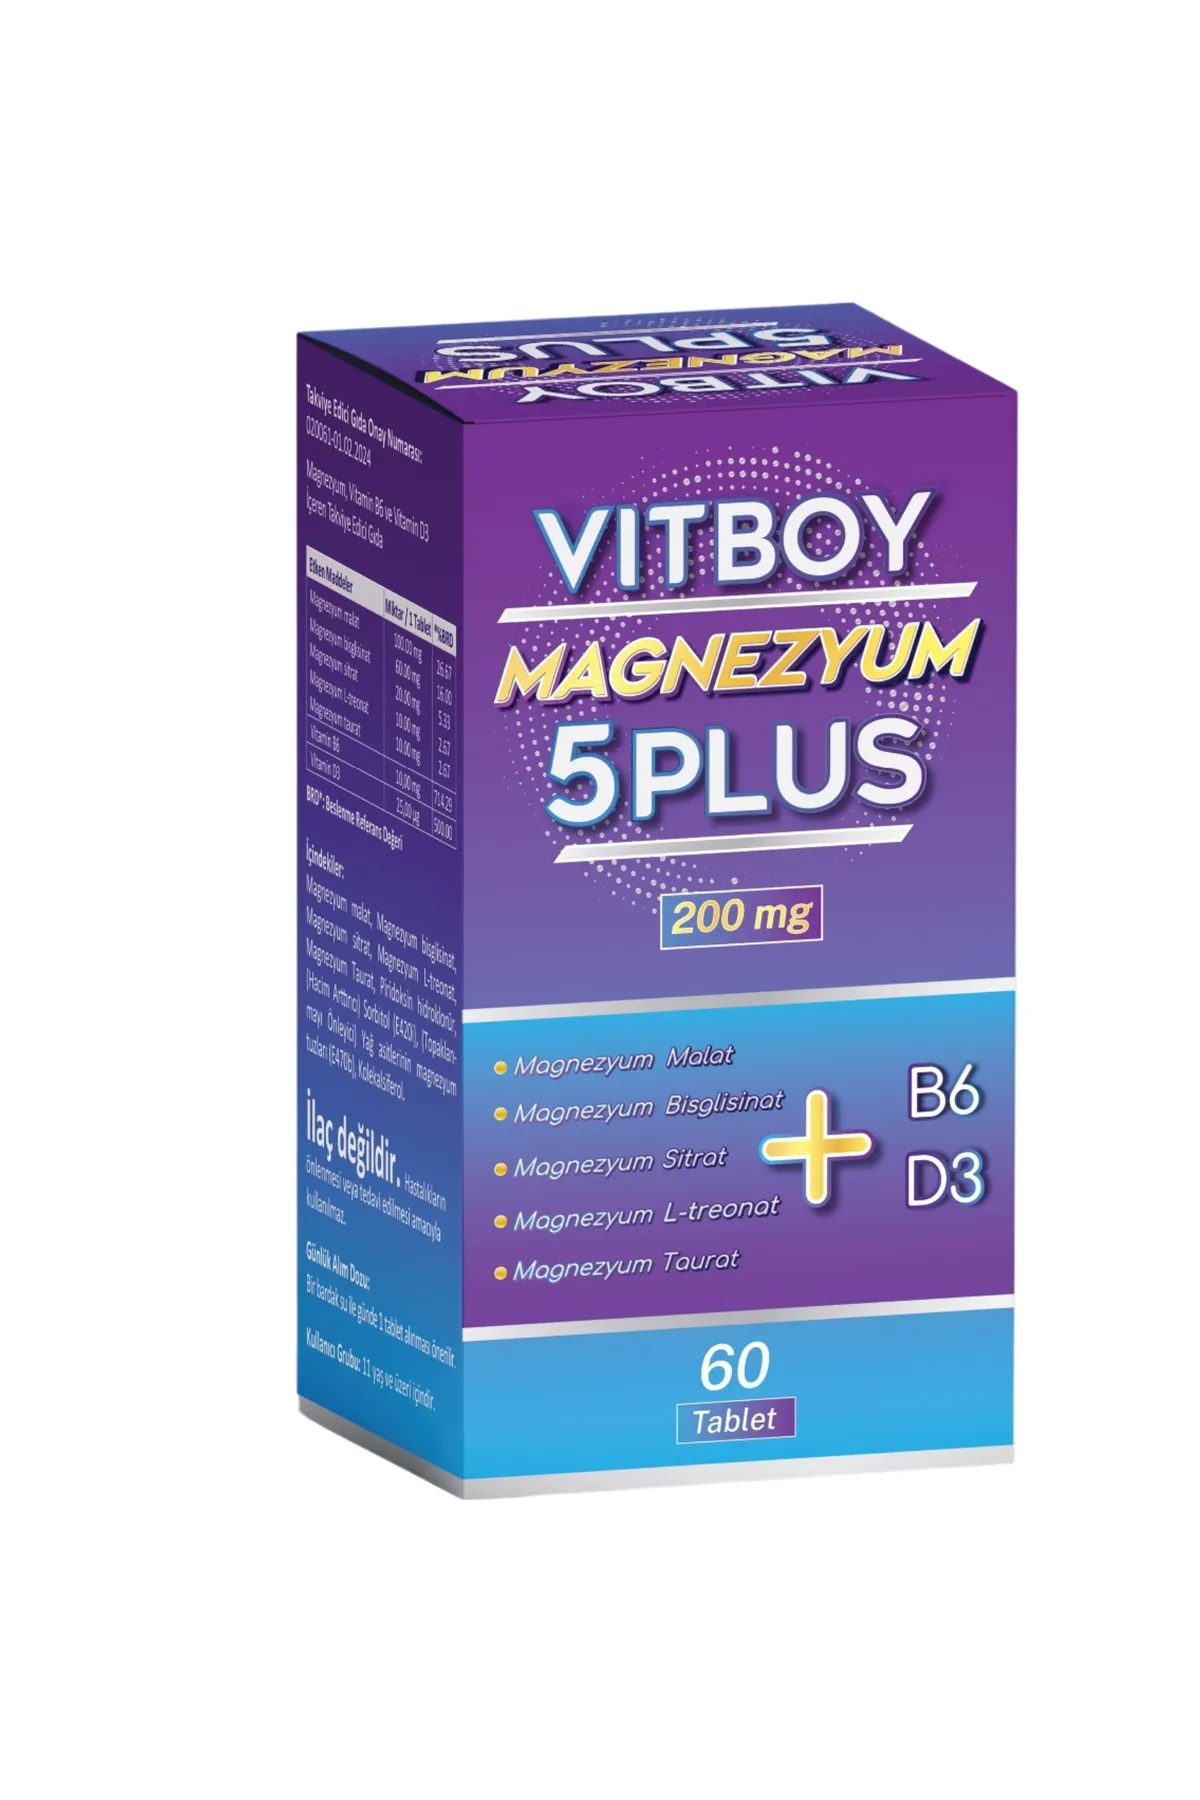 Vitboy Magnezyum 5 Plus 60 Tablet 200 mg Malat-Bisglisinat-Sitrat-L-Treonat-Taurat-B6-D3